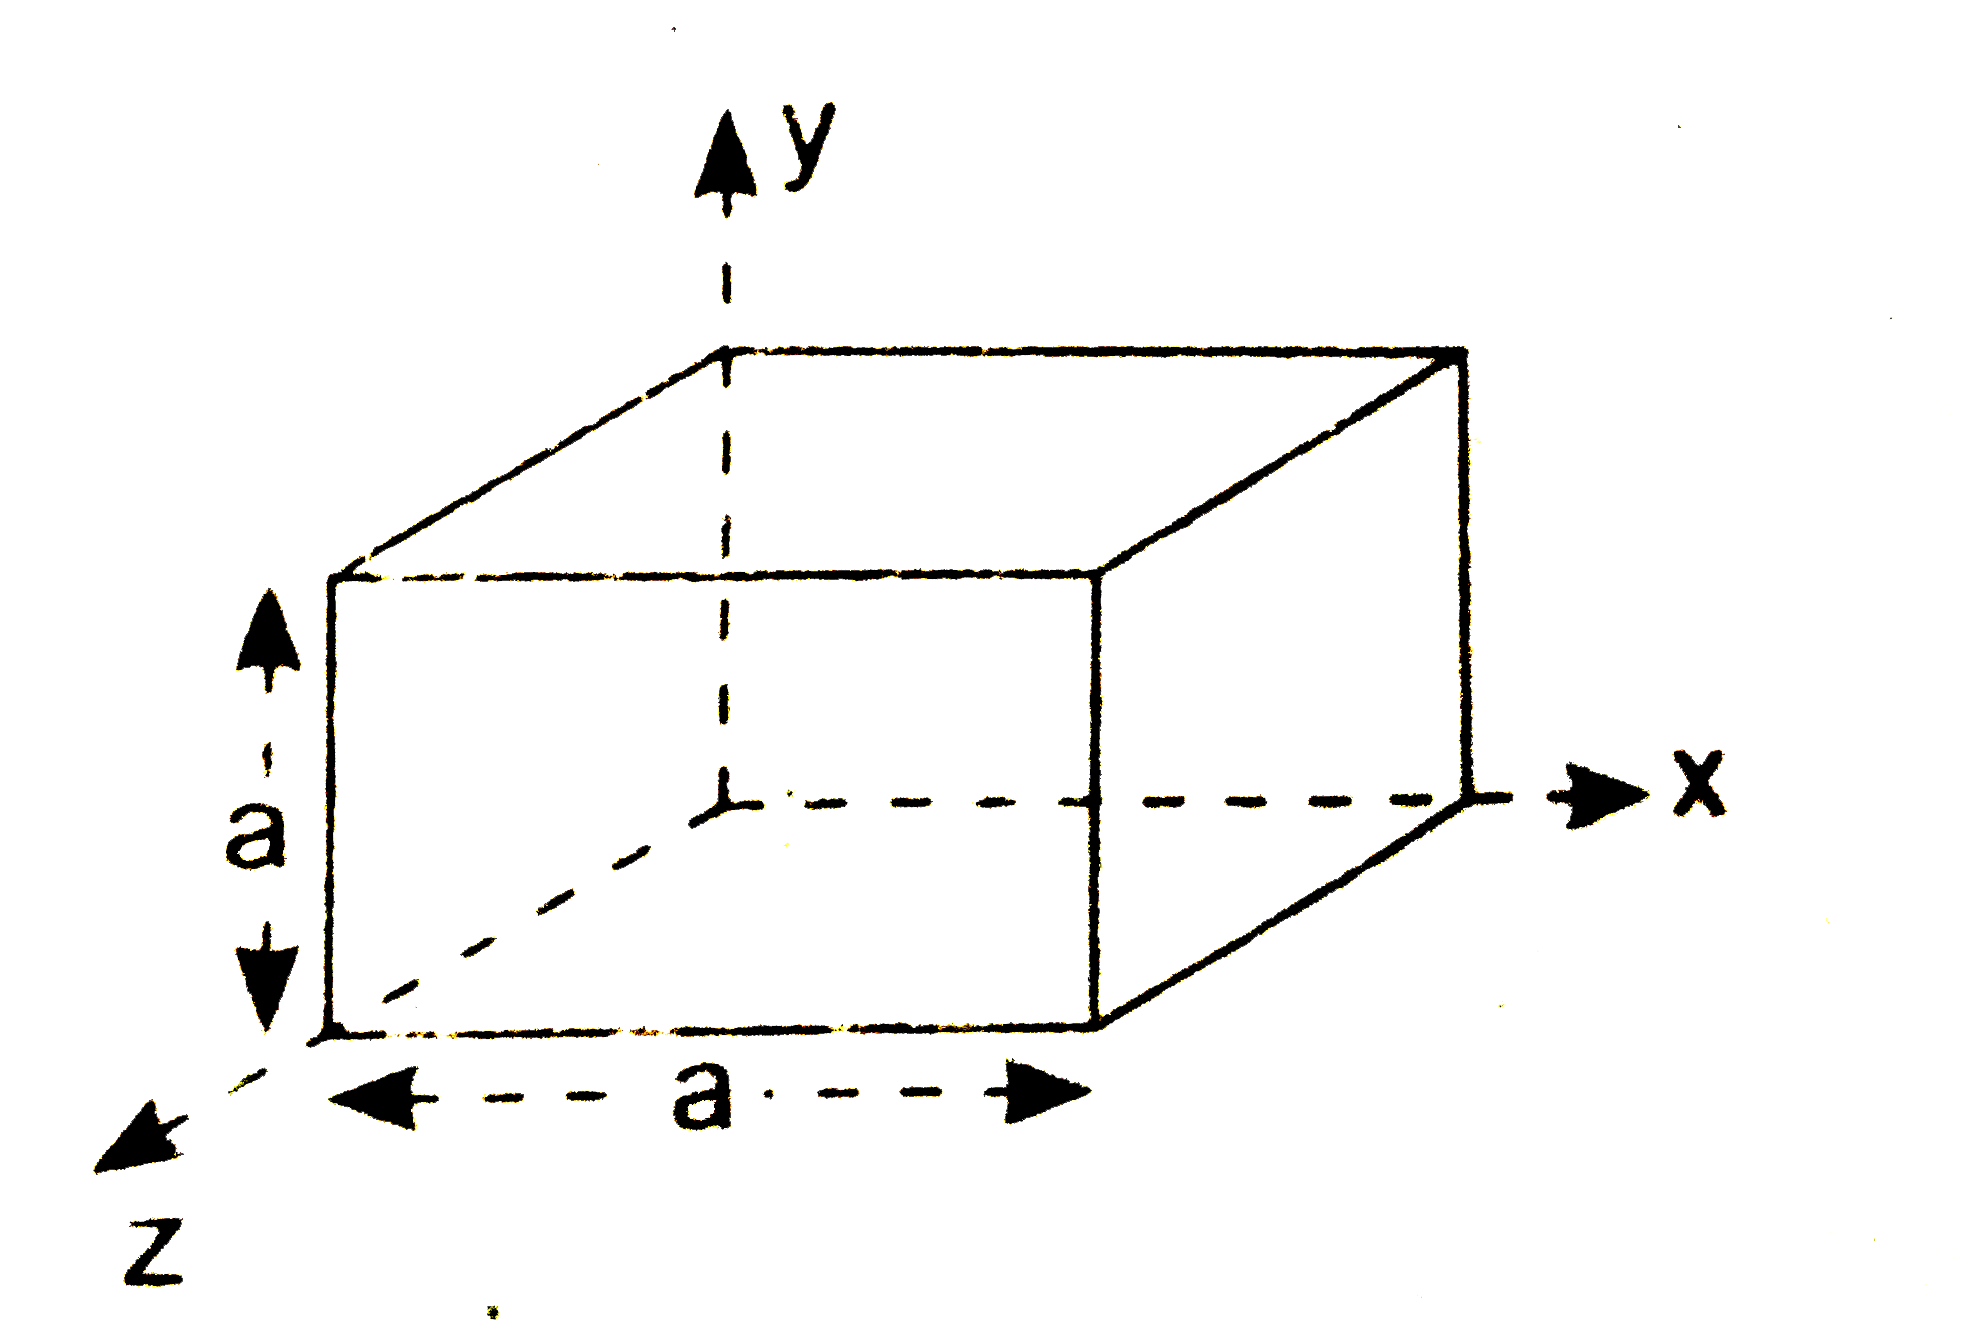 चित्र  में विधुत  क्षेत्र vecE =2xhati से  प्रदर्शित  है धन से  बुध्द वैधुत  फ्लक्स  तथा  उसके  भीतर  आवेश  का  मान  ज्ञात कीजिए